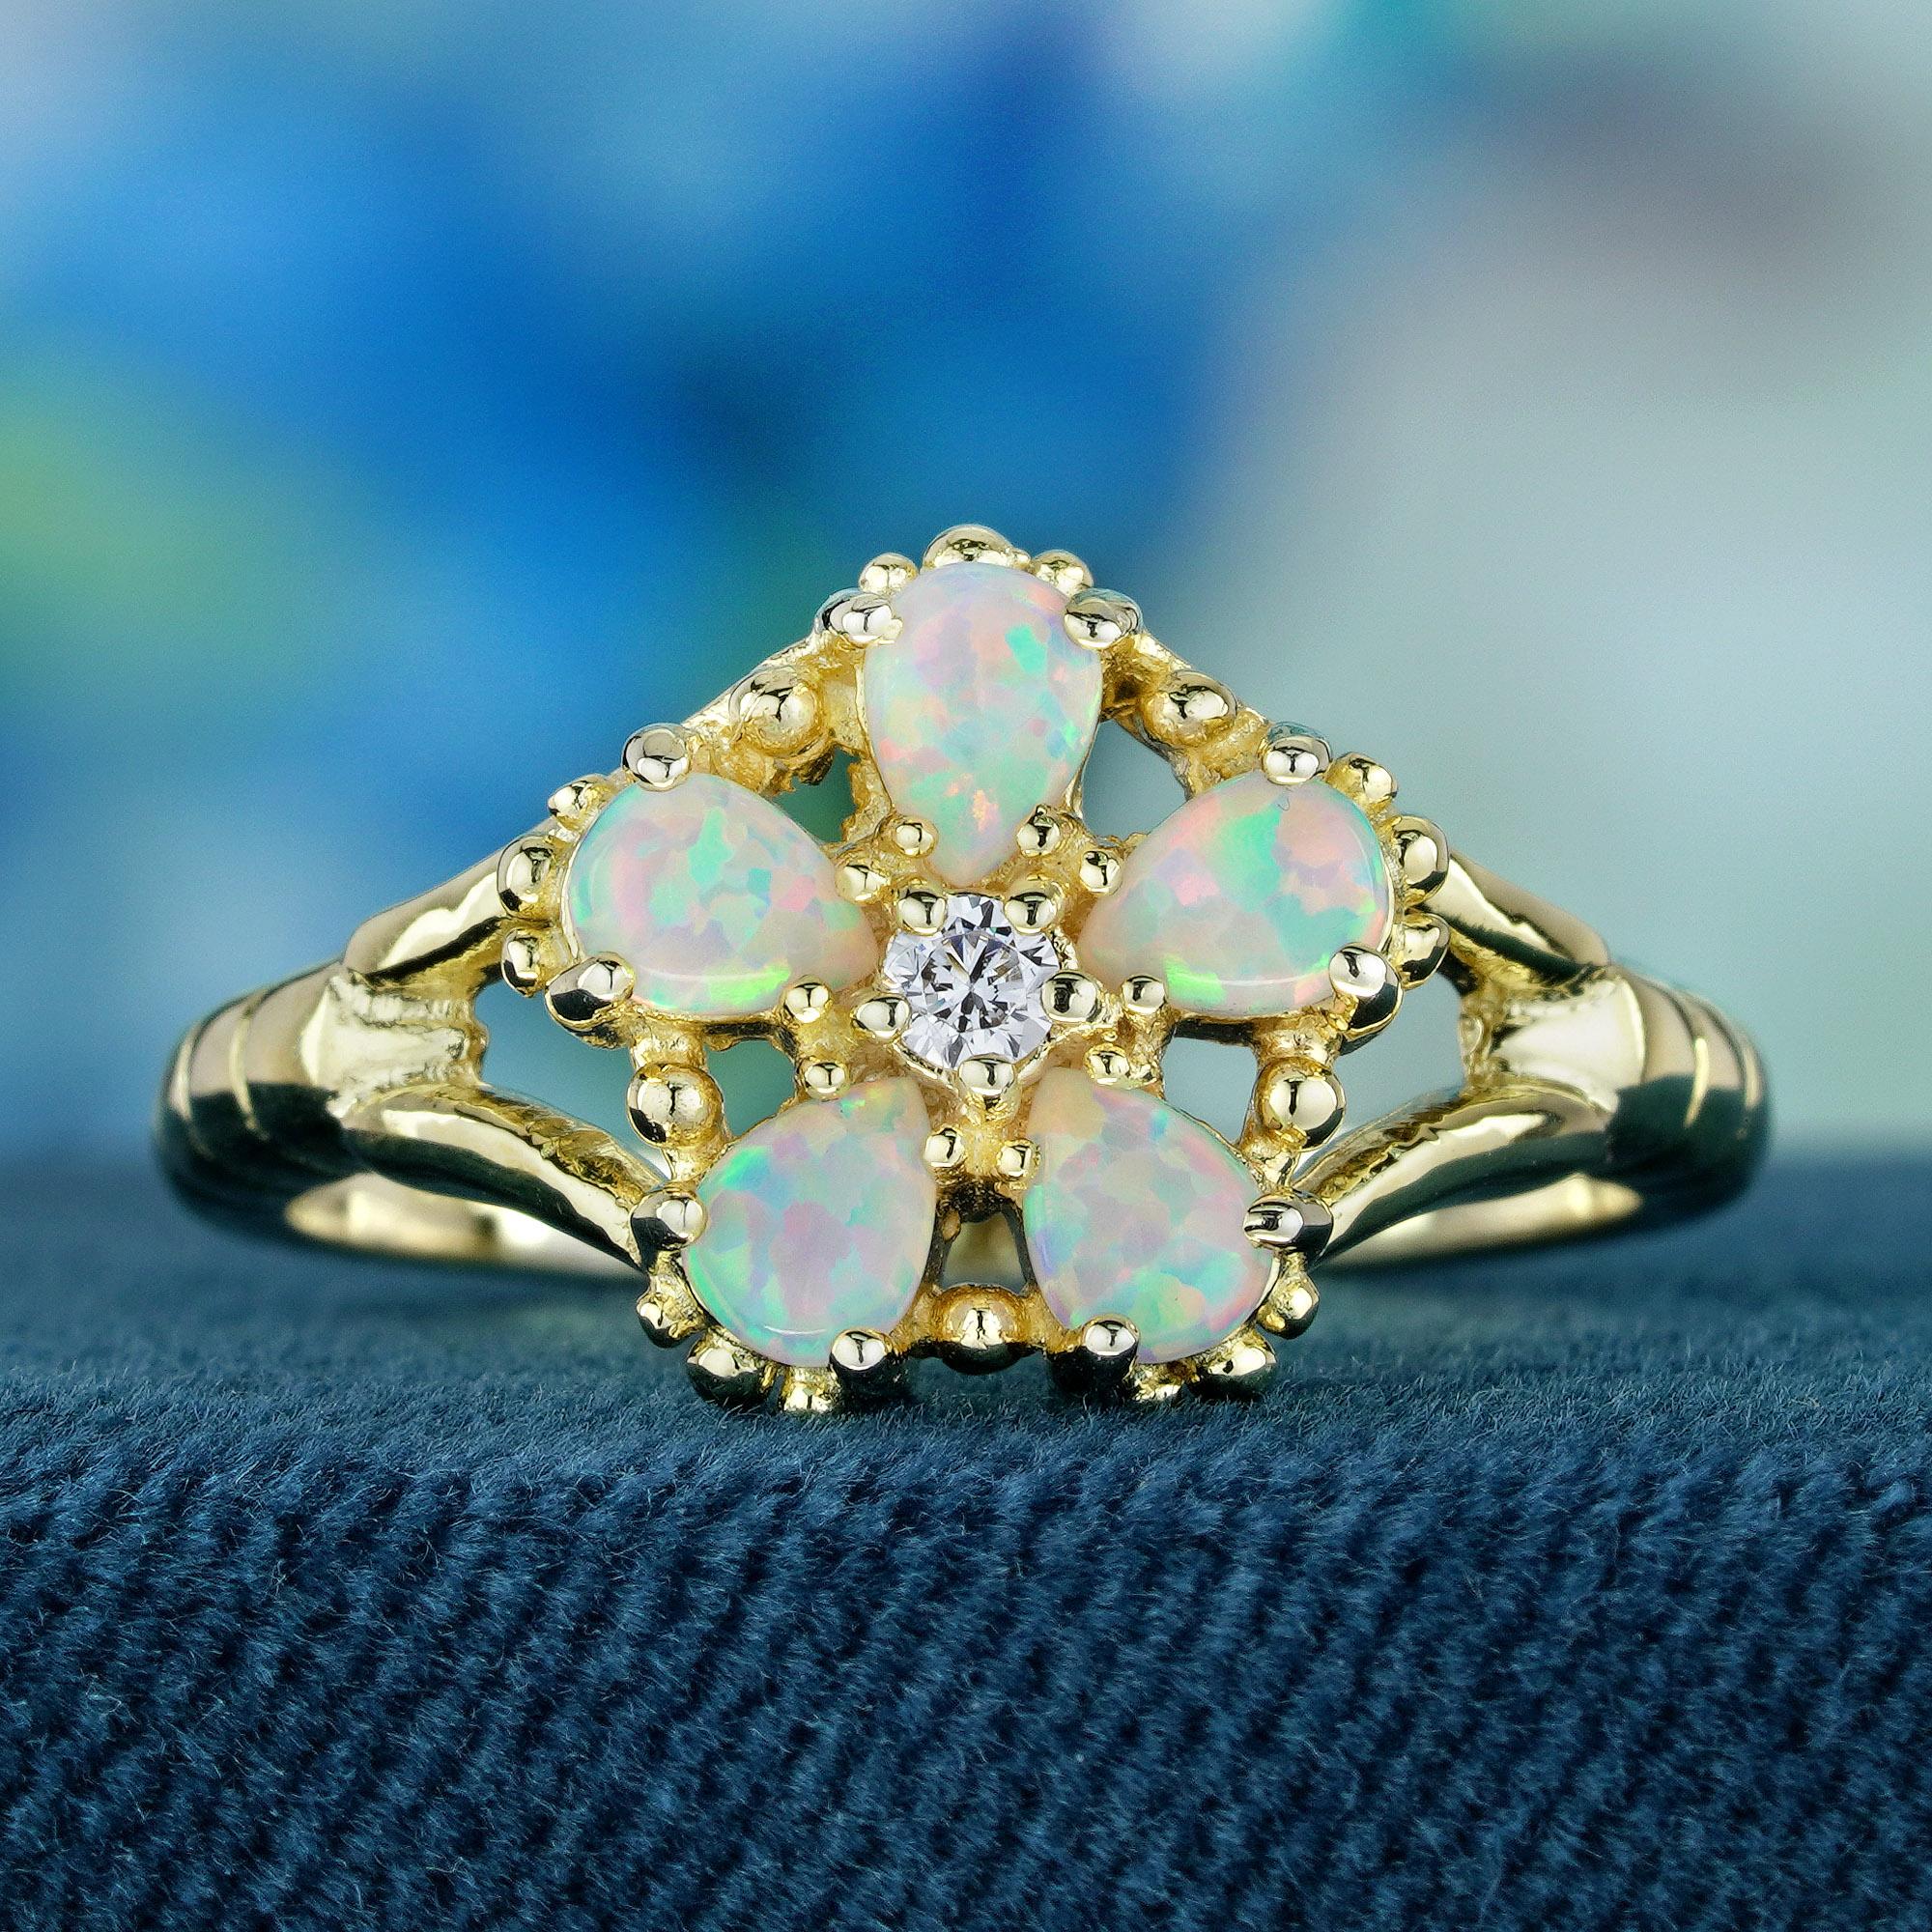 Gönnen Sie sich zeitlose Eleganz mit unserem Opal- und Diamantring Vintage Floral aus Gelbgold. Dieses atemberaubende, filigran gearbeitete Schmuckstück zeigt fünf birnenförmige Opale, die anmutig wie Blütenblätter gefasst sind und von einem